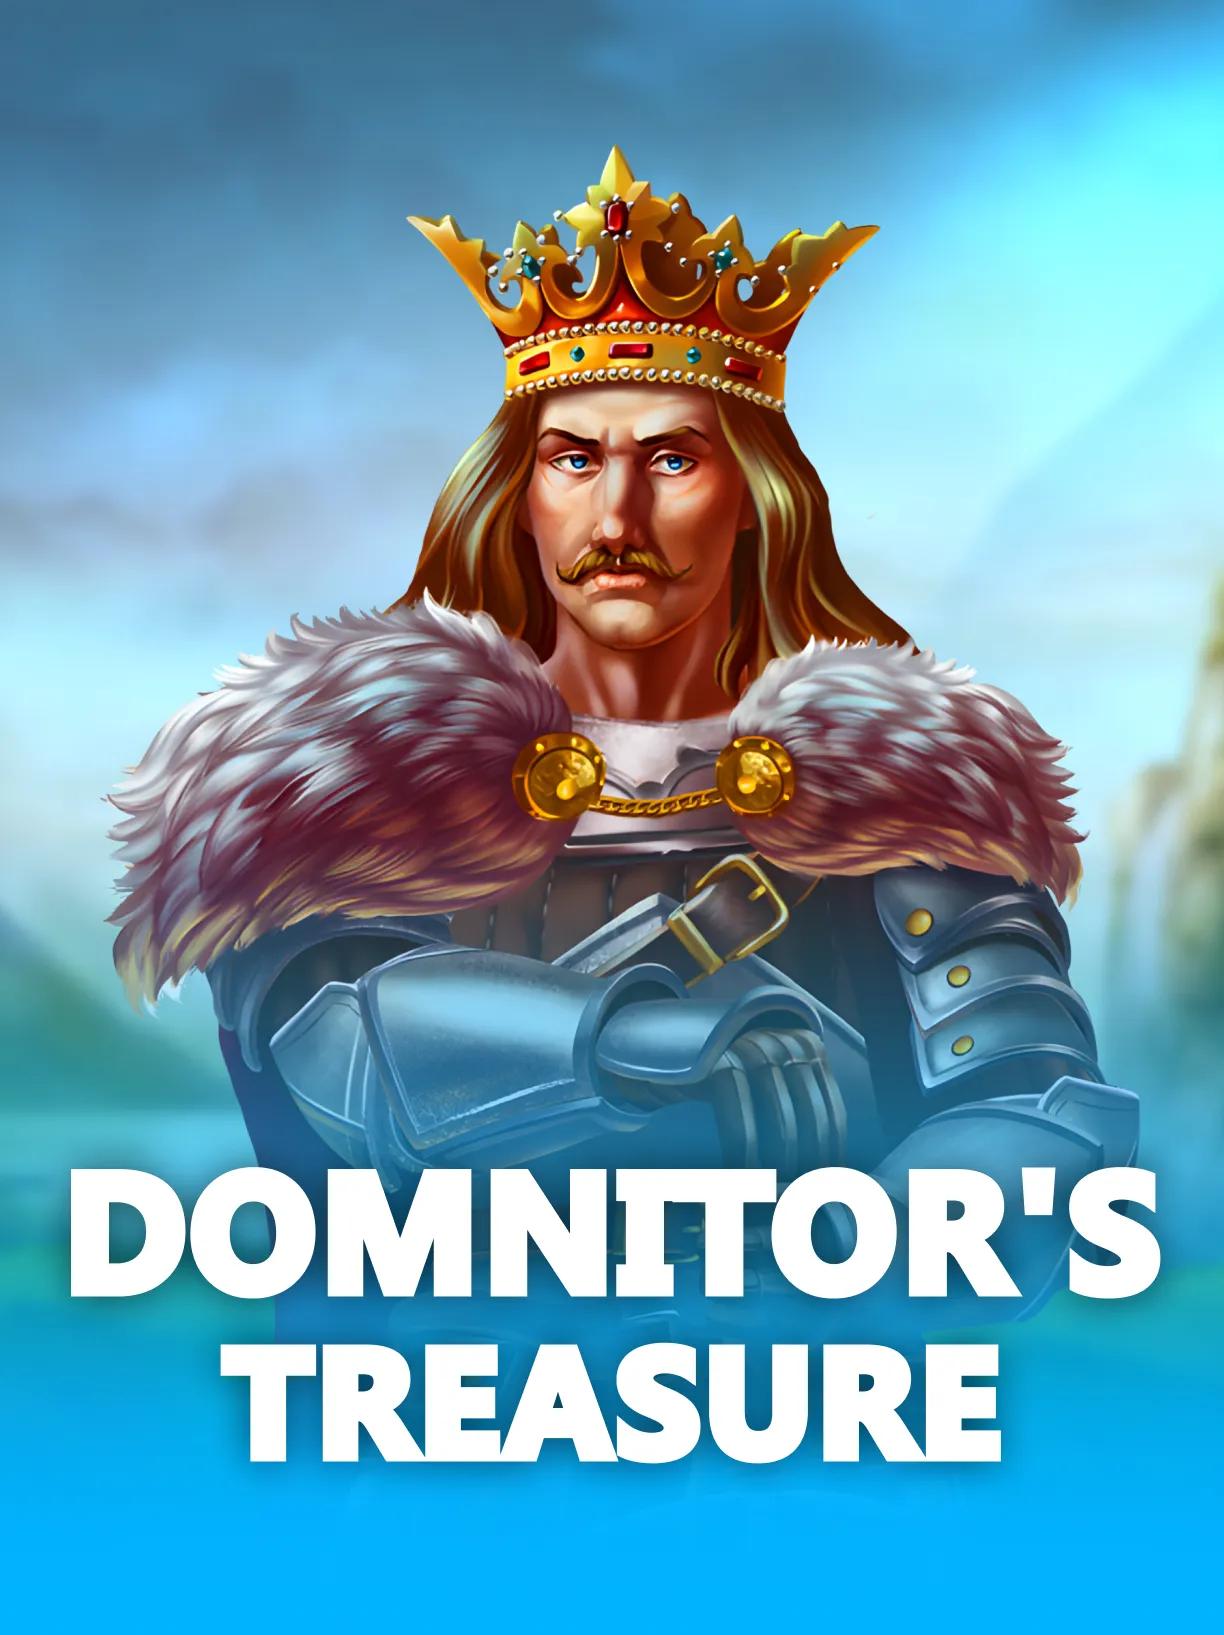 Domnitors Treasure